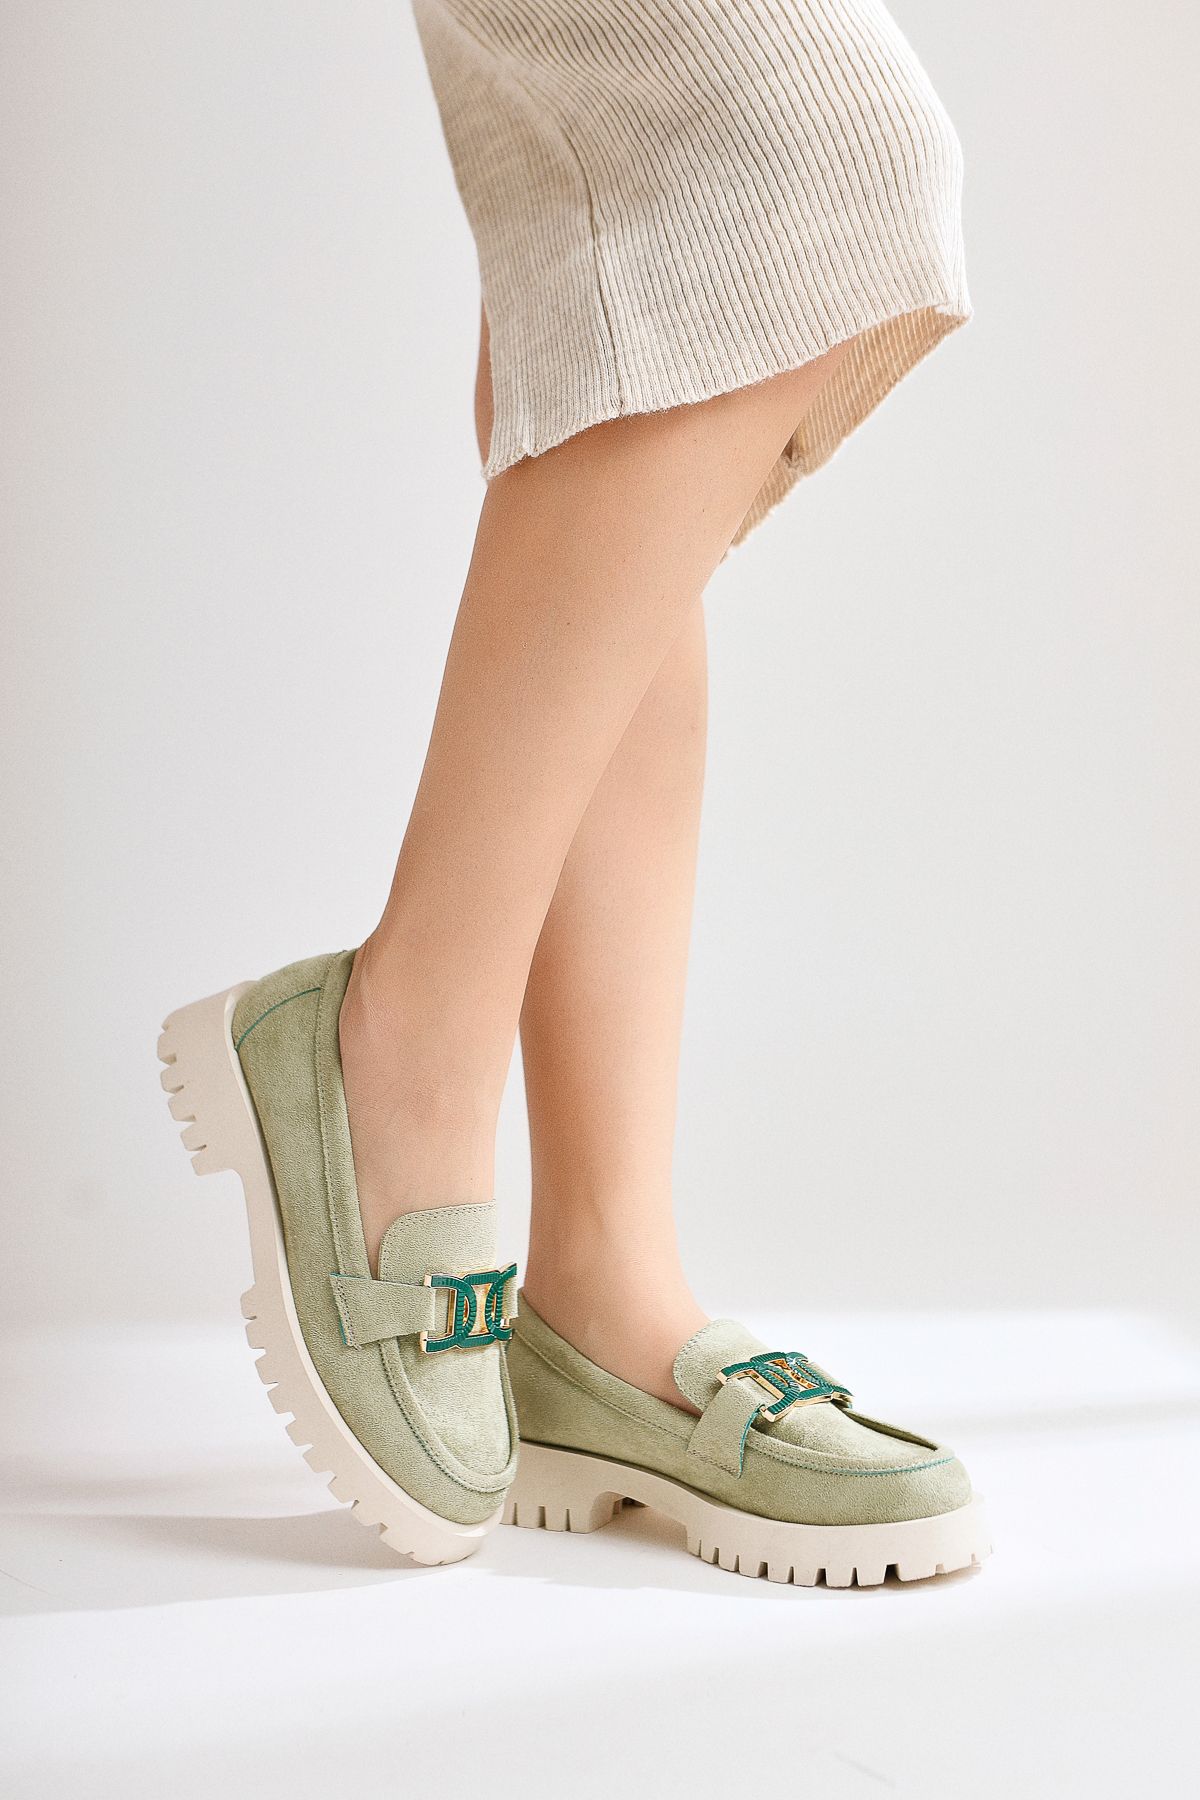 Limoya Ann-Sophi Yeşil Süet Toka Detaylı Oxford Ayakkabı